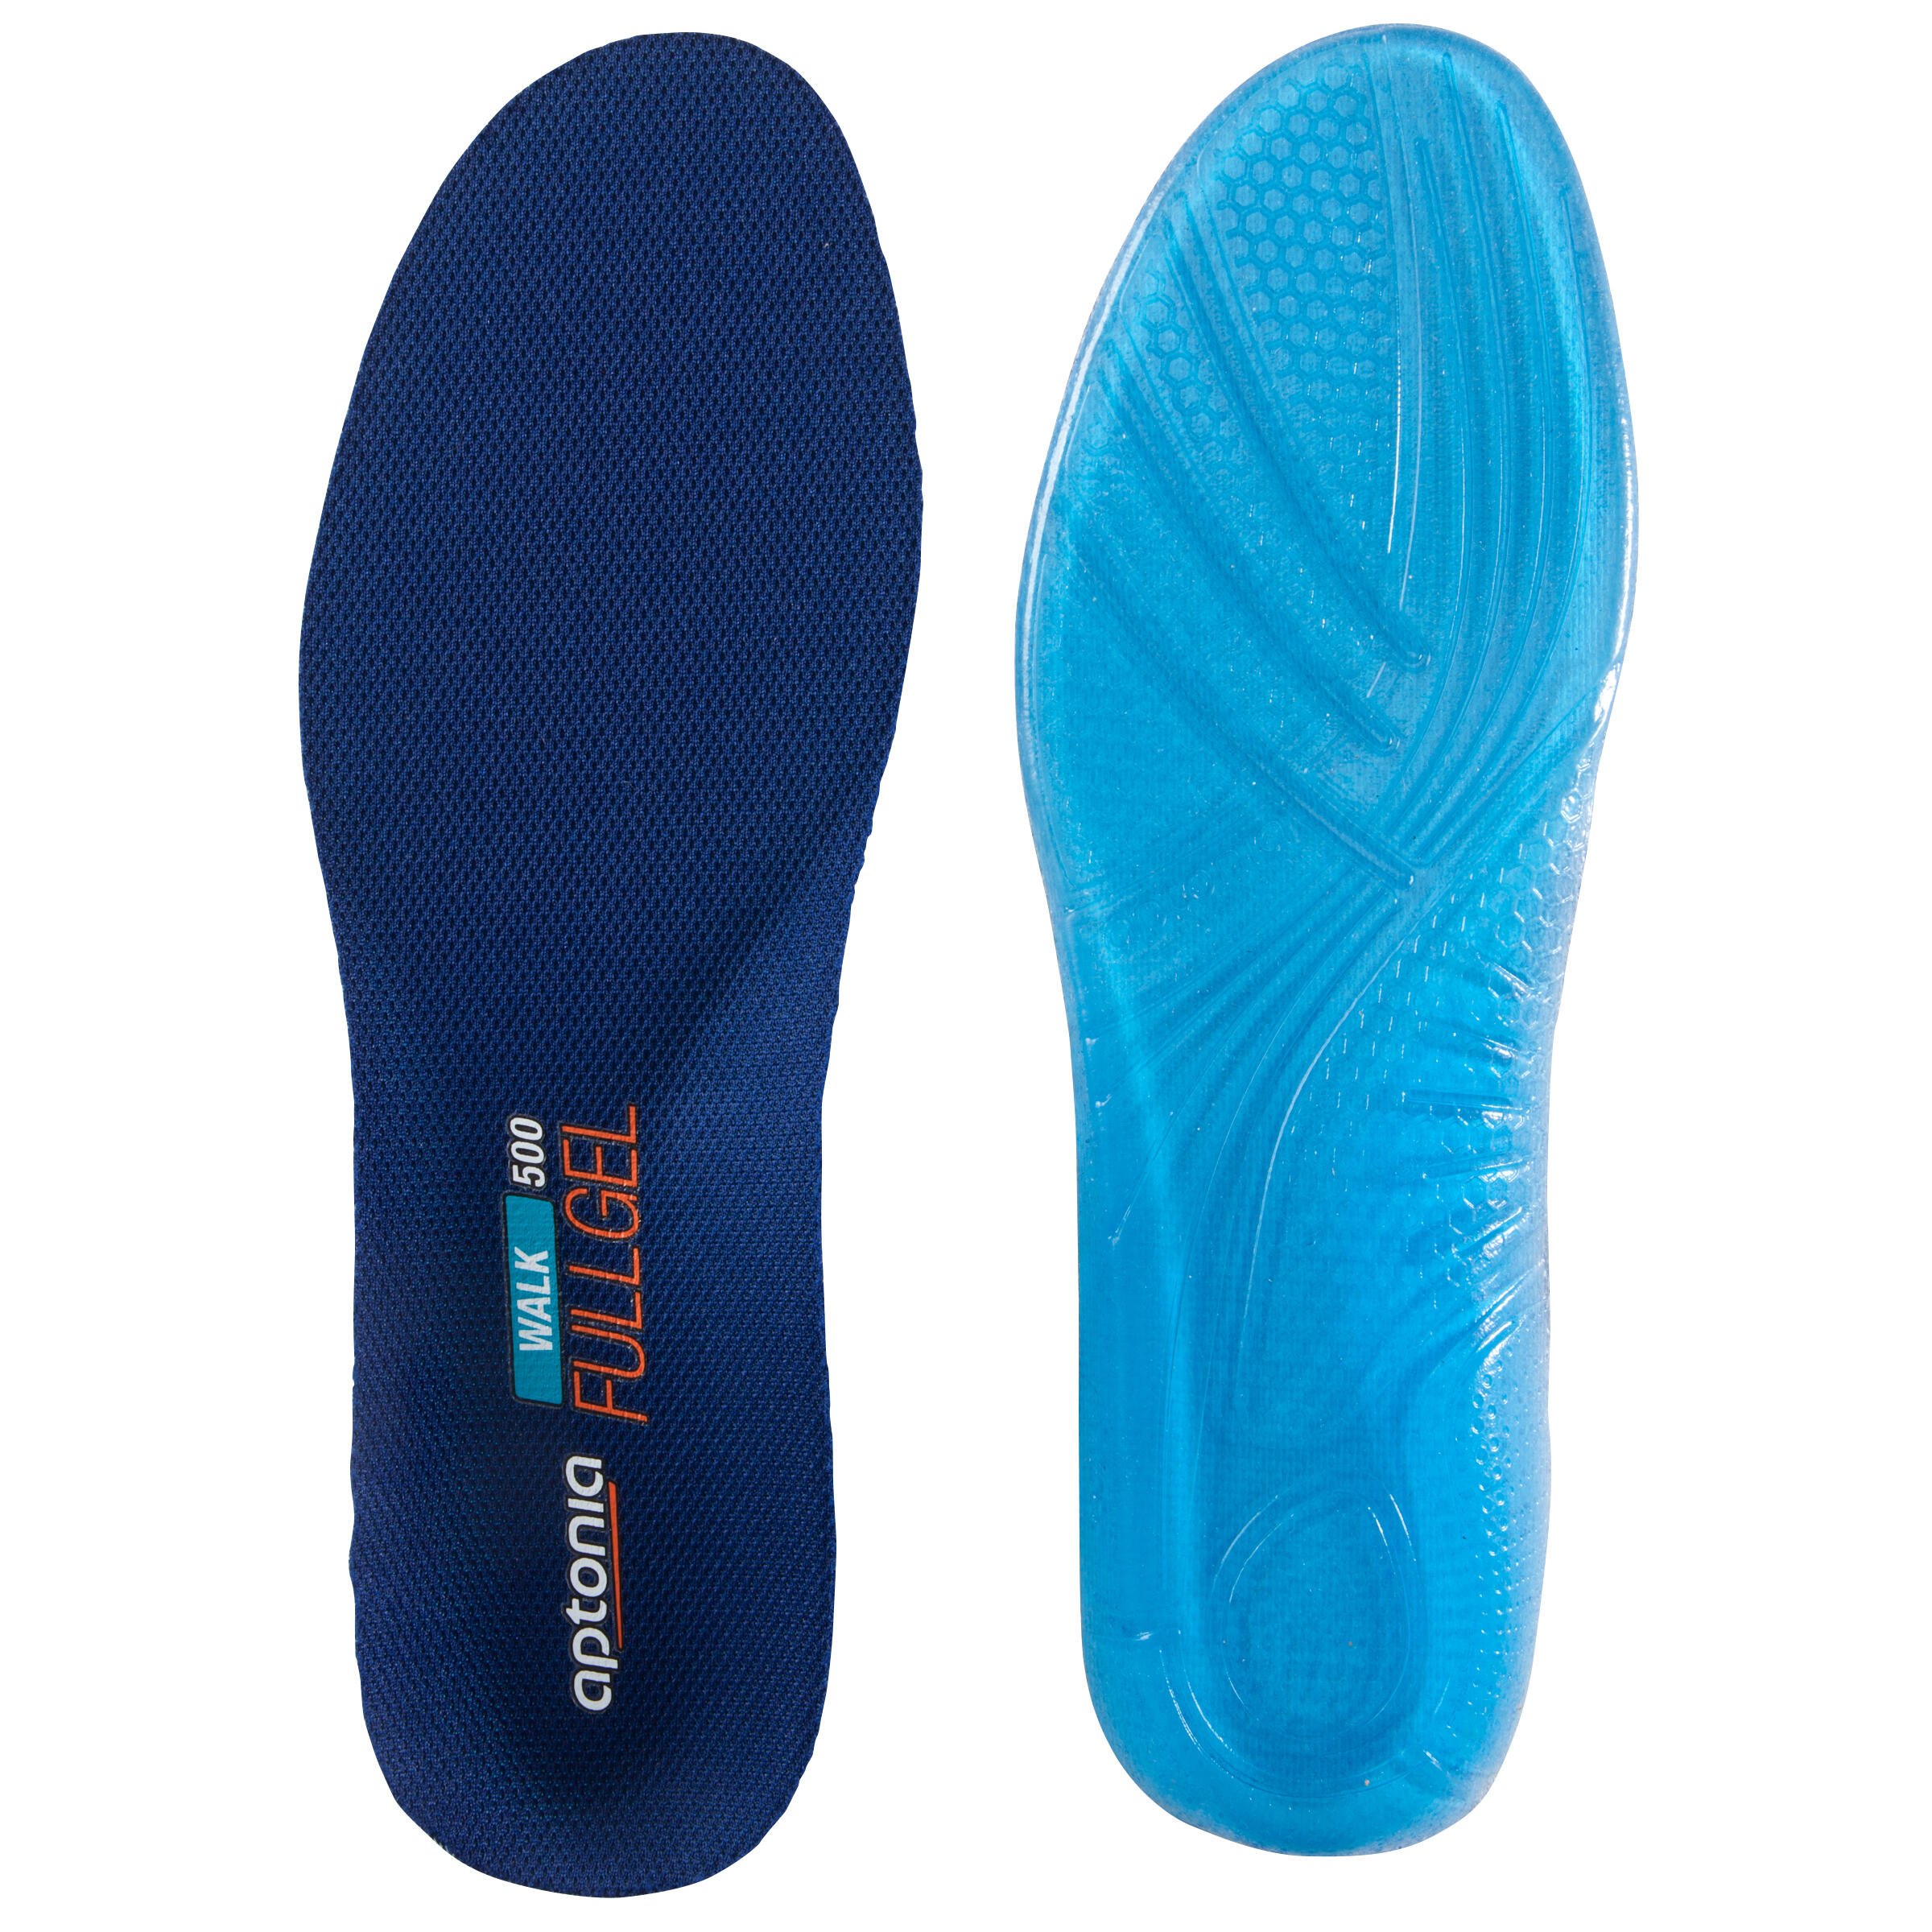 WALK 500 SOLE - BLUE - Decathlon